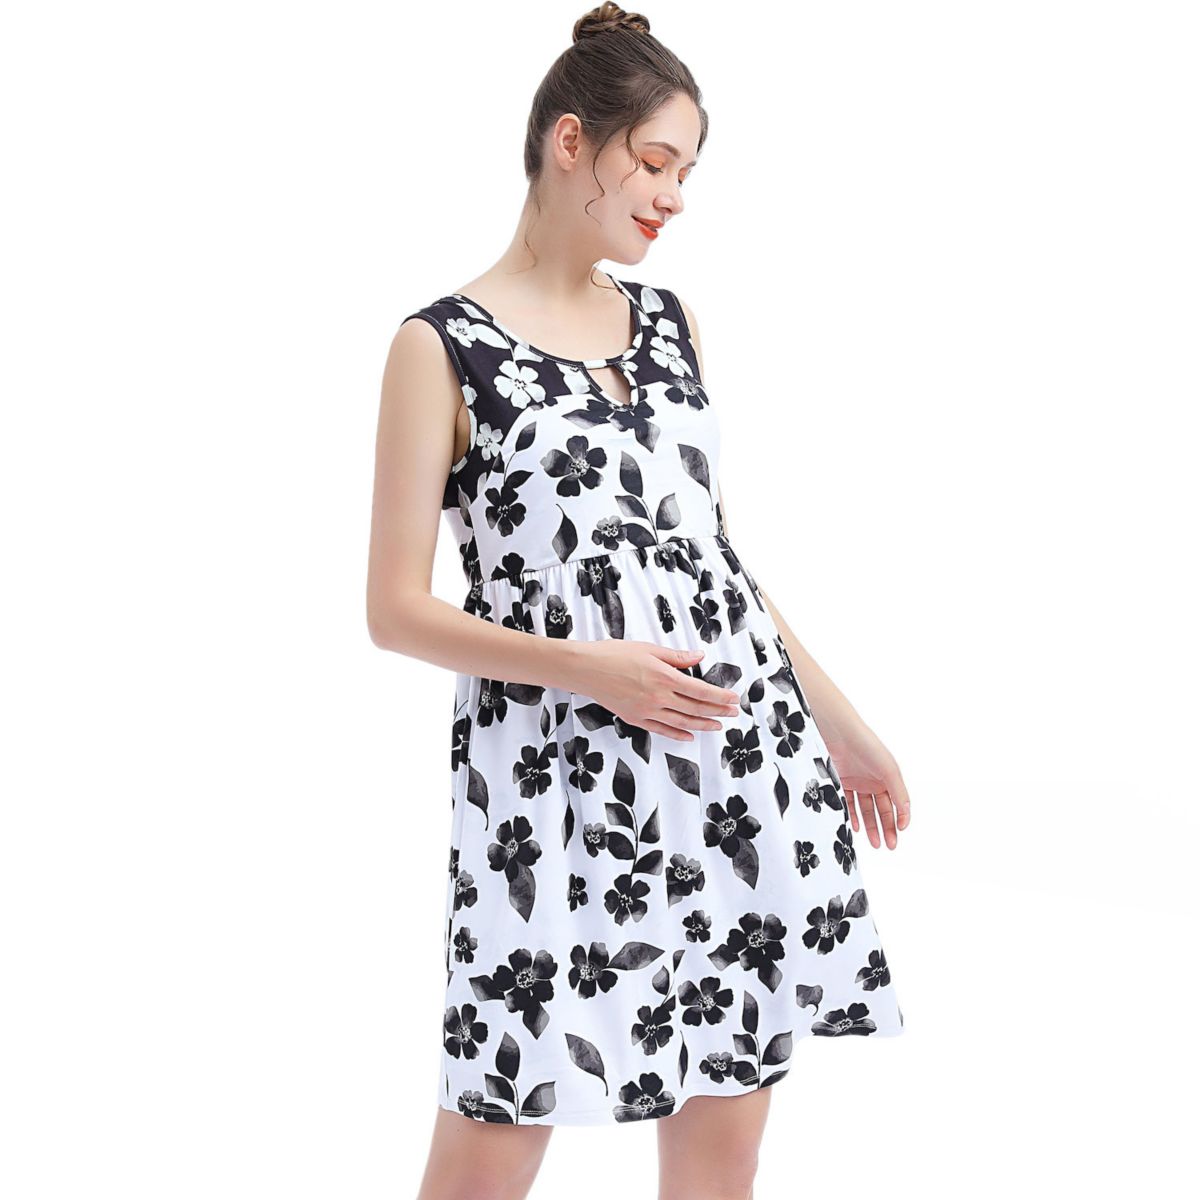 Платье с плиссированной юбкой Pokkori для беременных Pokkori